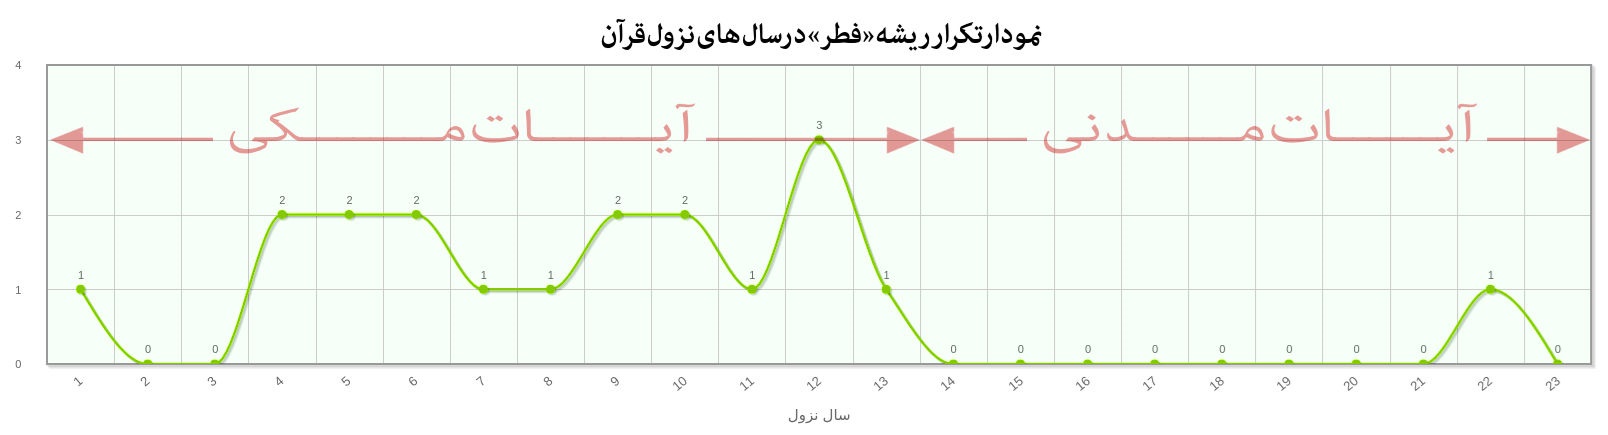 نمودار تکرار ریشه فطر بر حسب سال نزول در قرآن